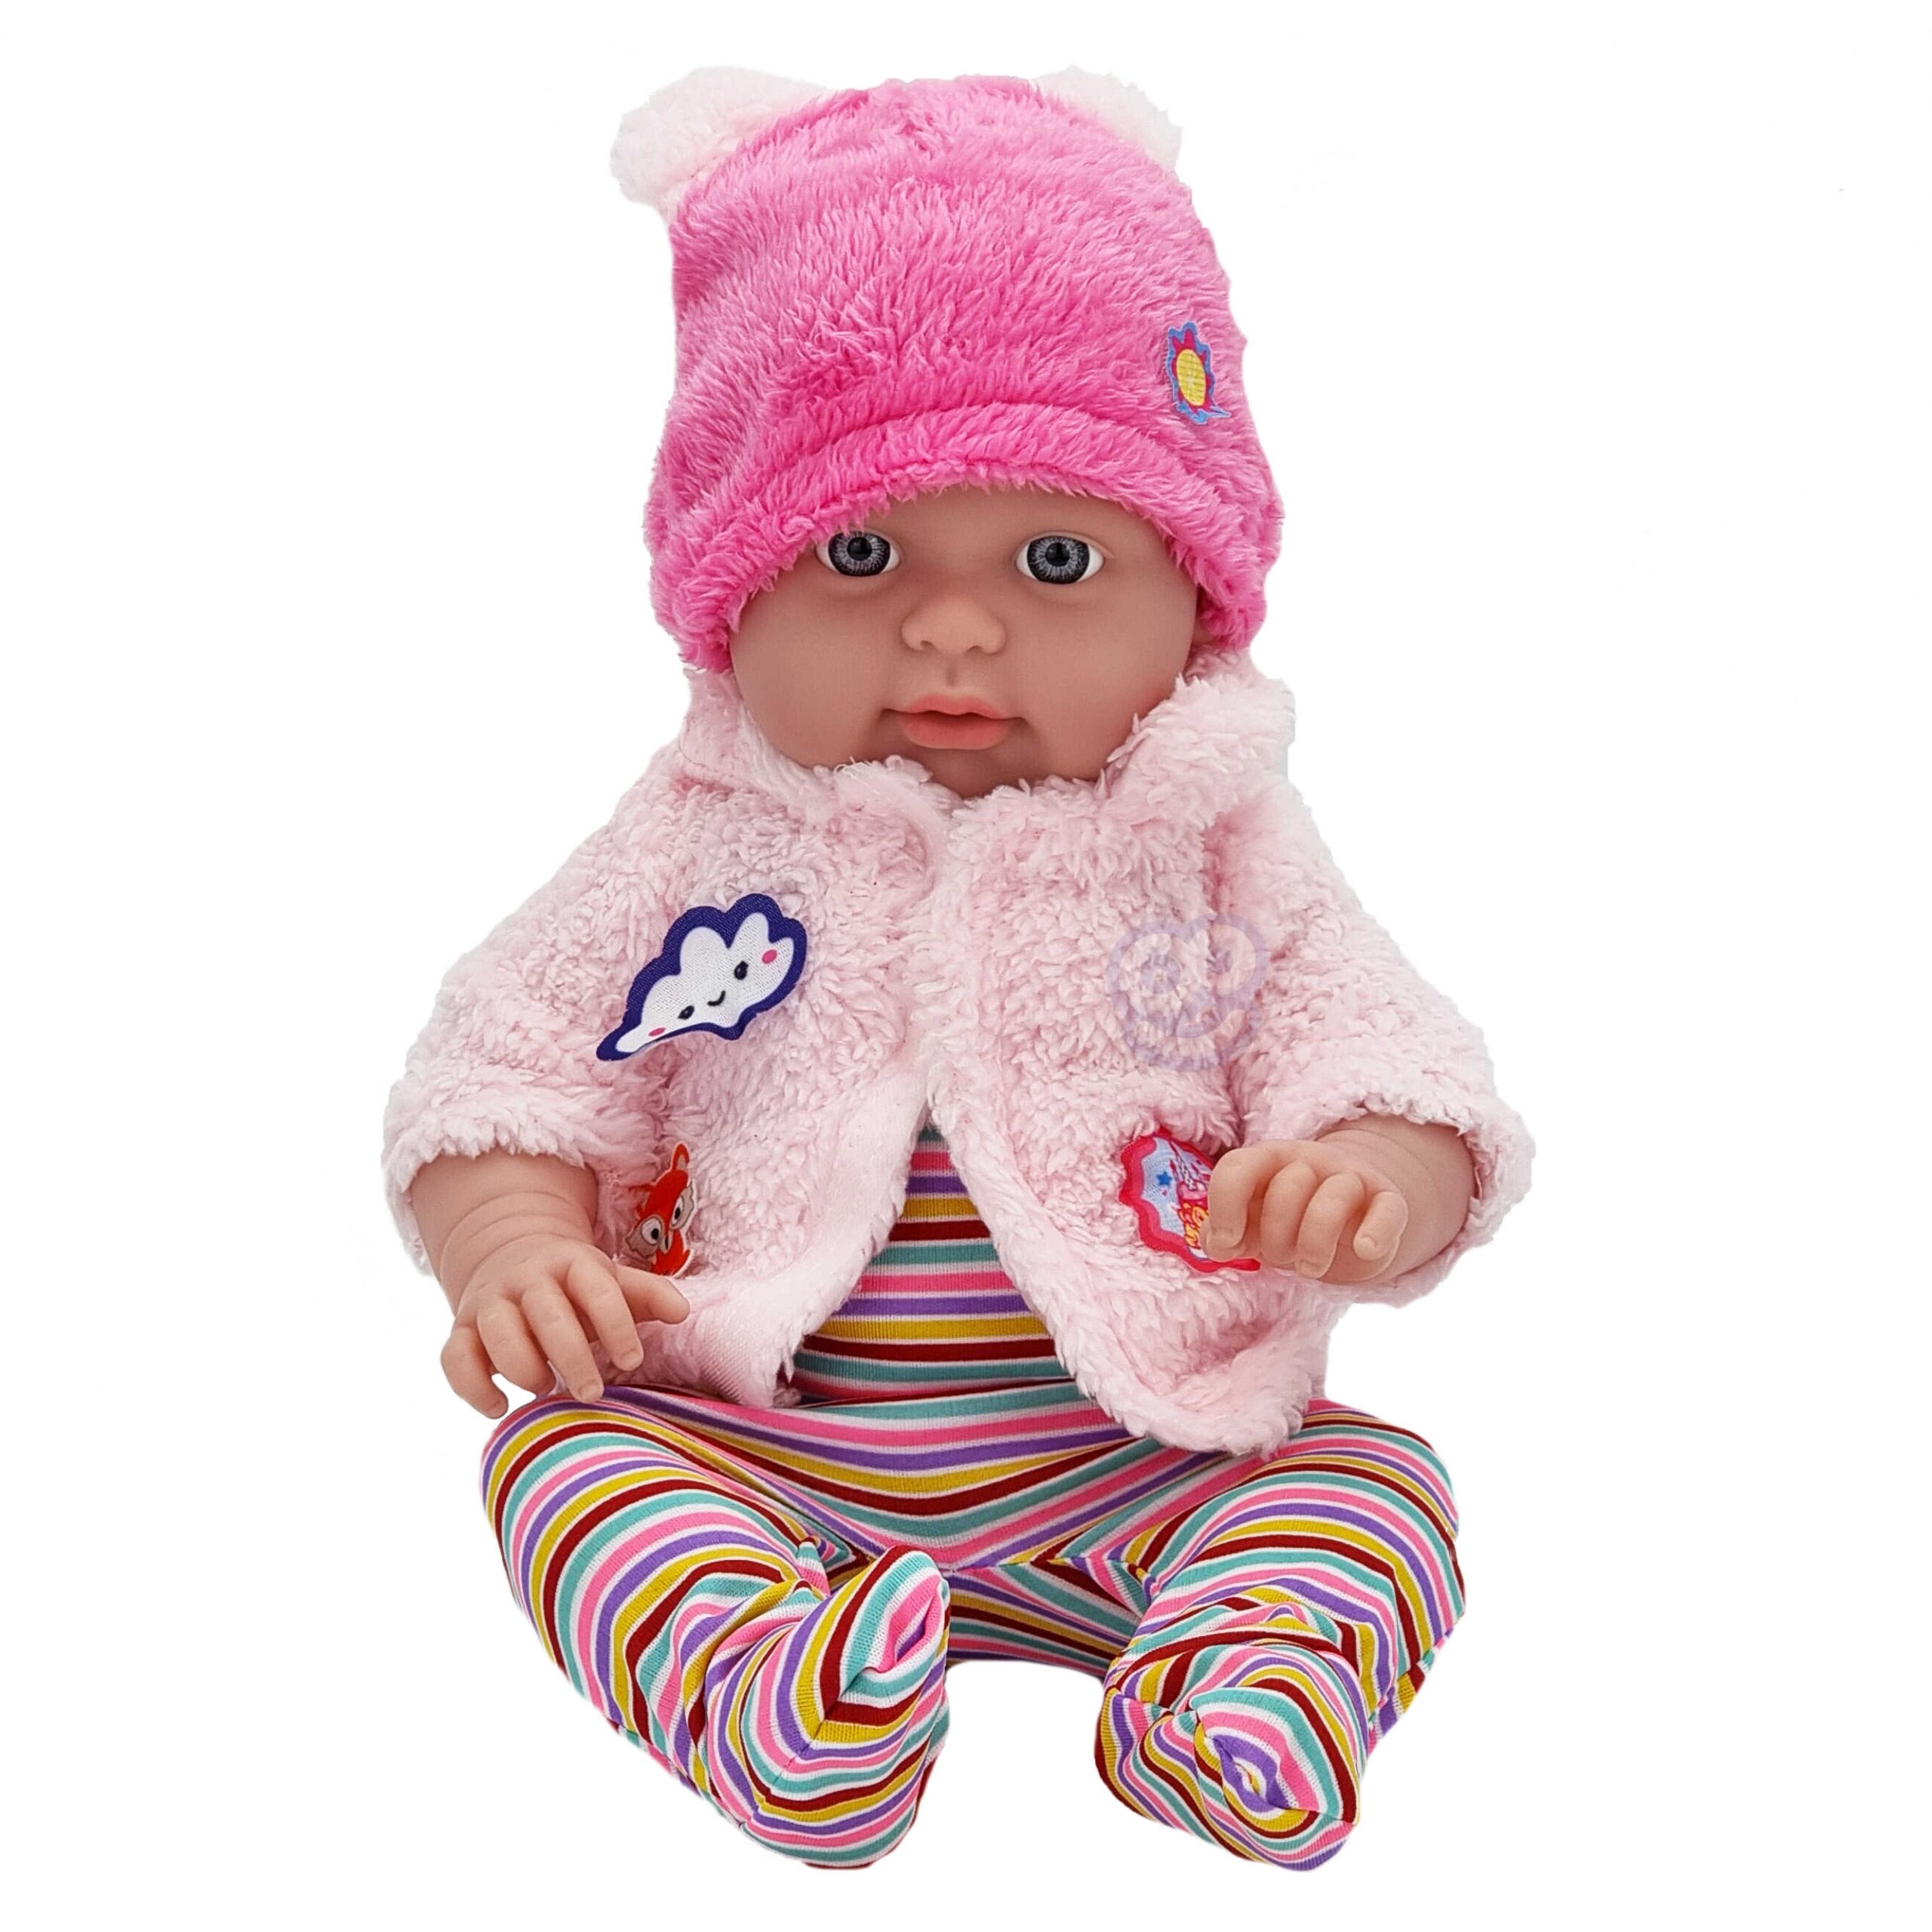 Ubranko dla lalki zestaw kurteczka baranek czapeczka + body 43-46 cm, zabawka dla dzieci, Woopie